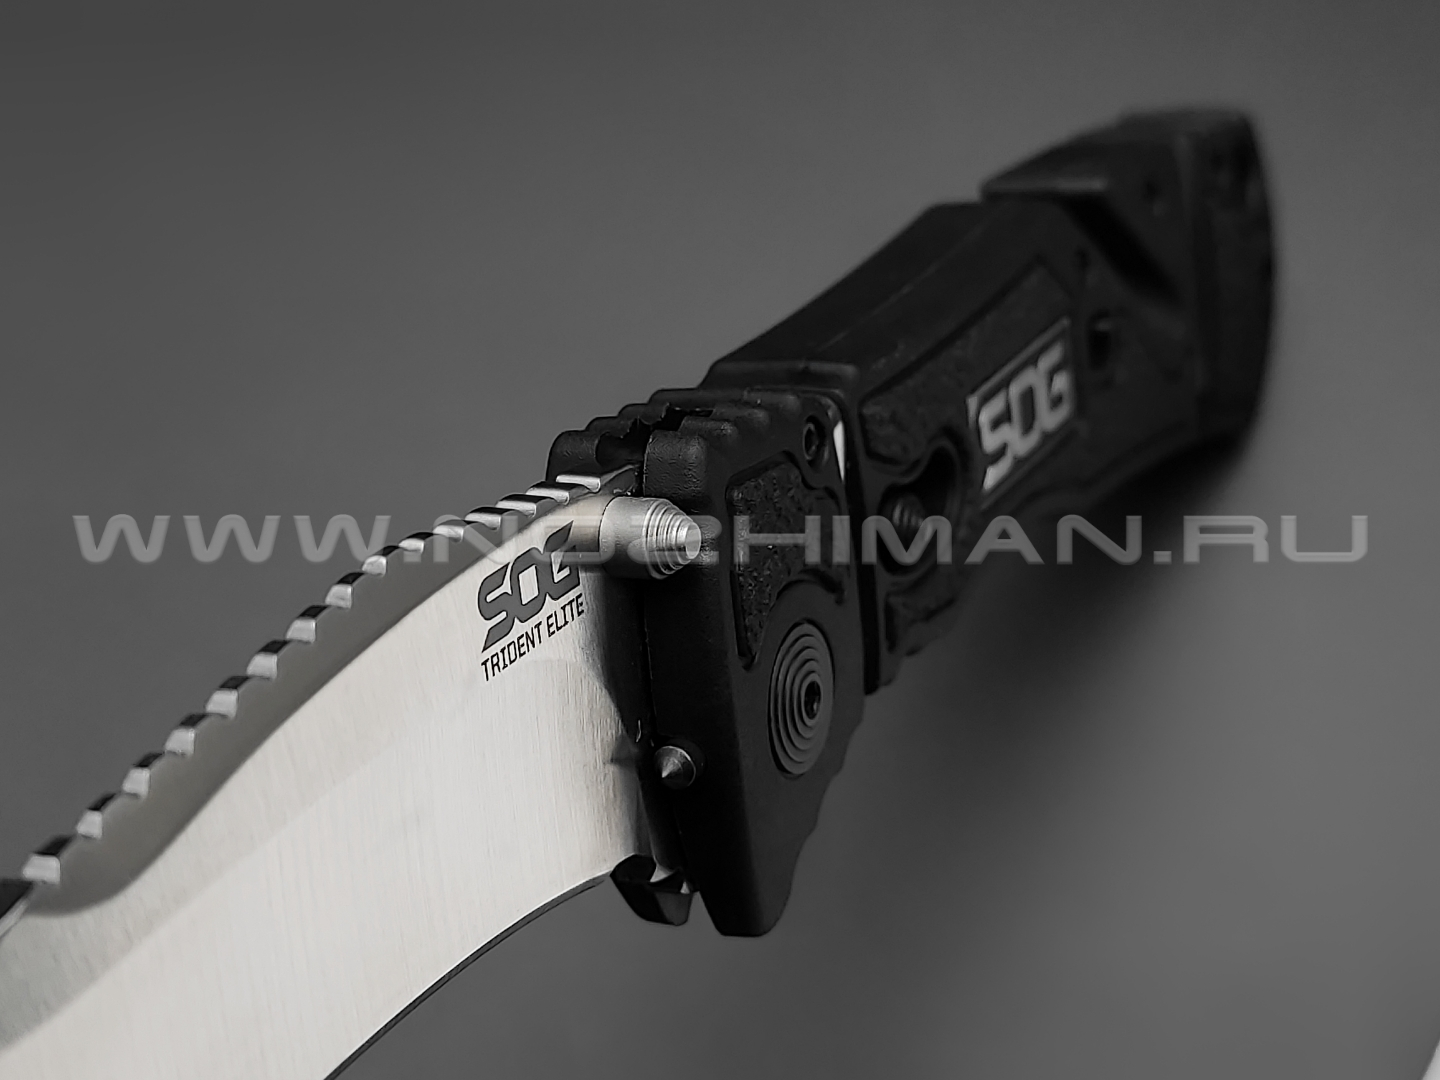 Нож SOG Trident Elite TF101 сталь Aus-8, рукоять Glass Reinforced Nylon